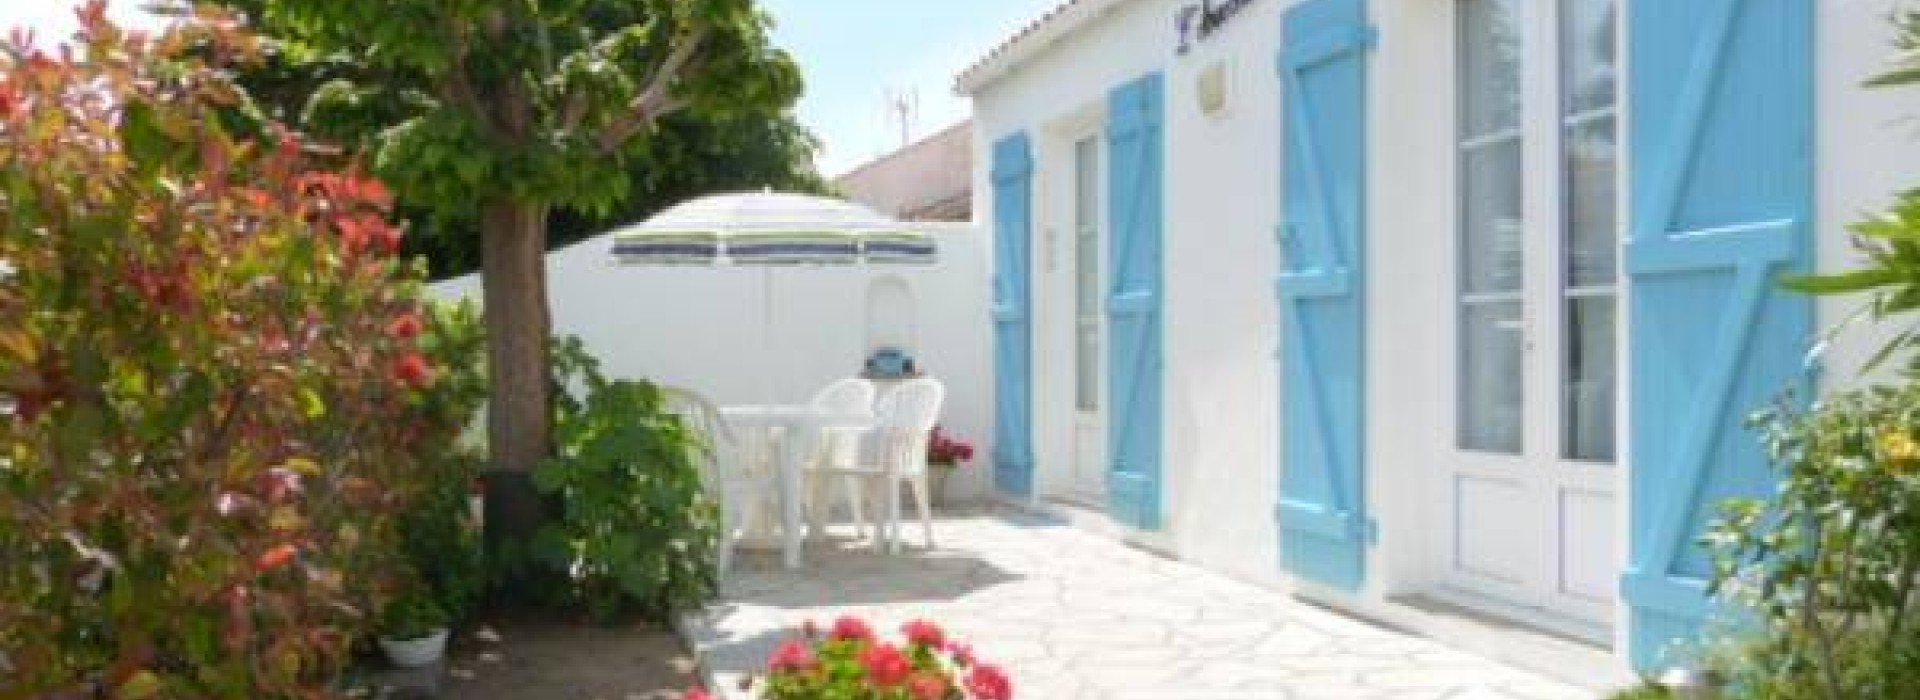 Ile de Noirmoutier - Maison de vacances 5 personnes beneficiant d'un acces direct a la plage